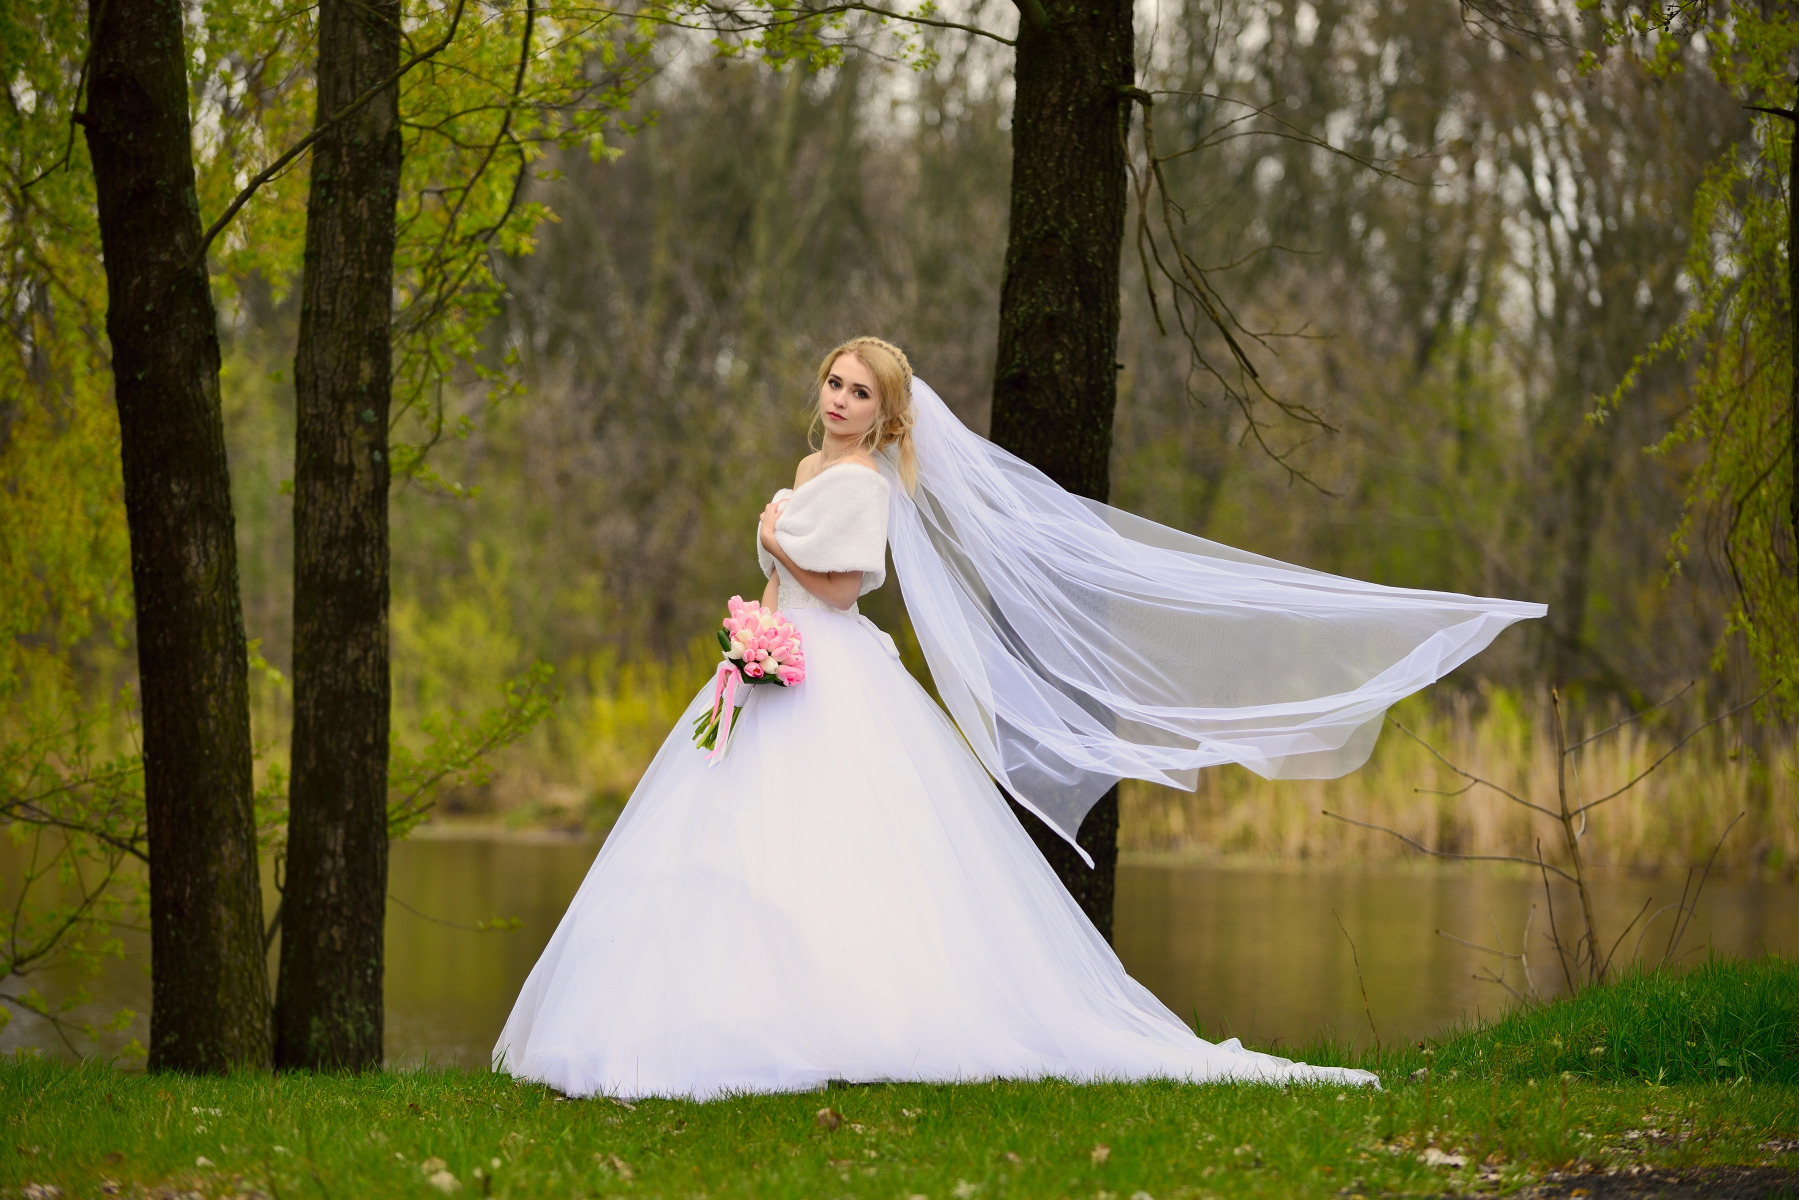 wedding | Фотограф Дмитрий Мармузевич | foto.by фото.бай